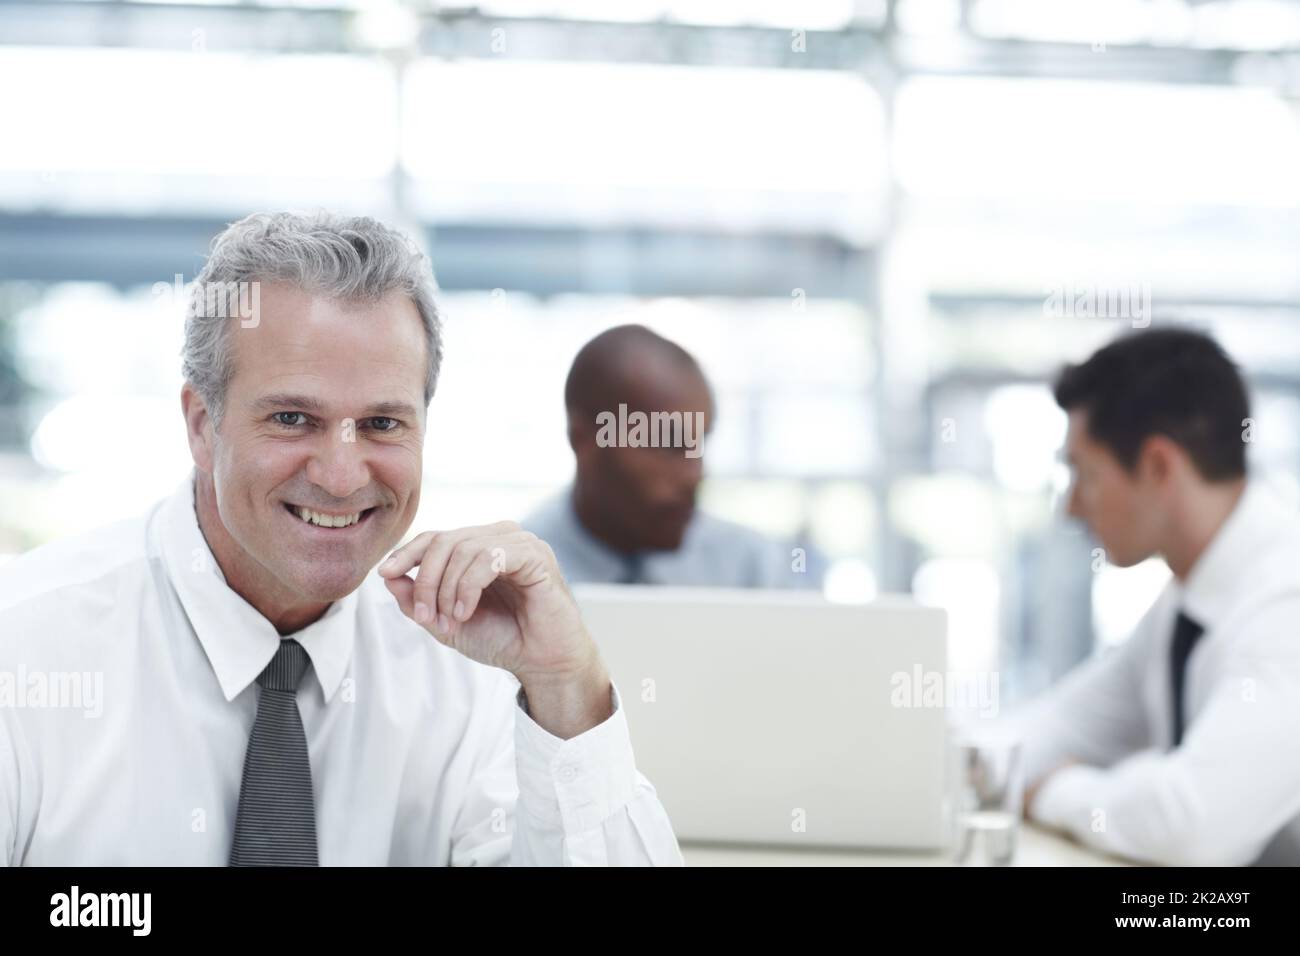 HES un datore di lavoro ben equilibrato. Ritratto di un uomo d'affari maturo sorridente mentre si siede di fronte a due colleghi più giovani. Foto Stock